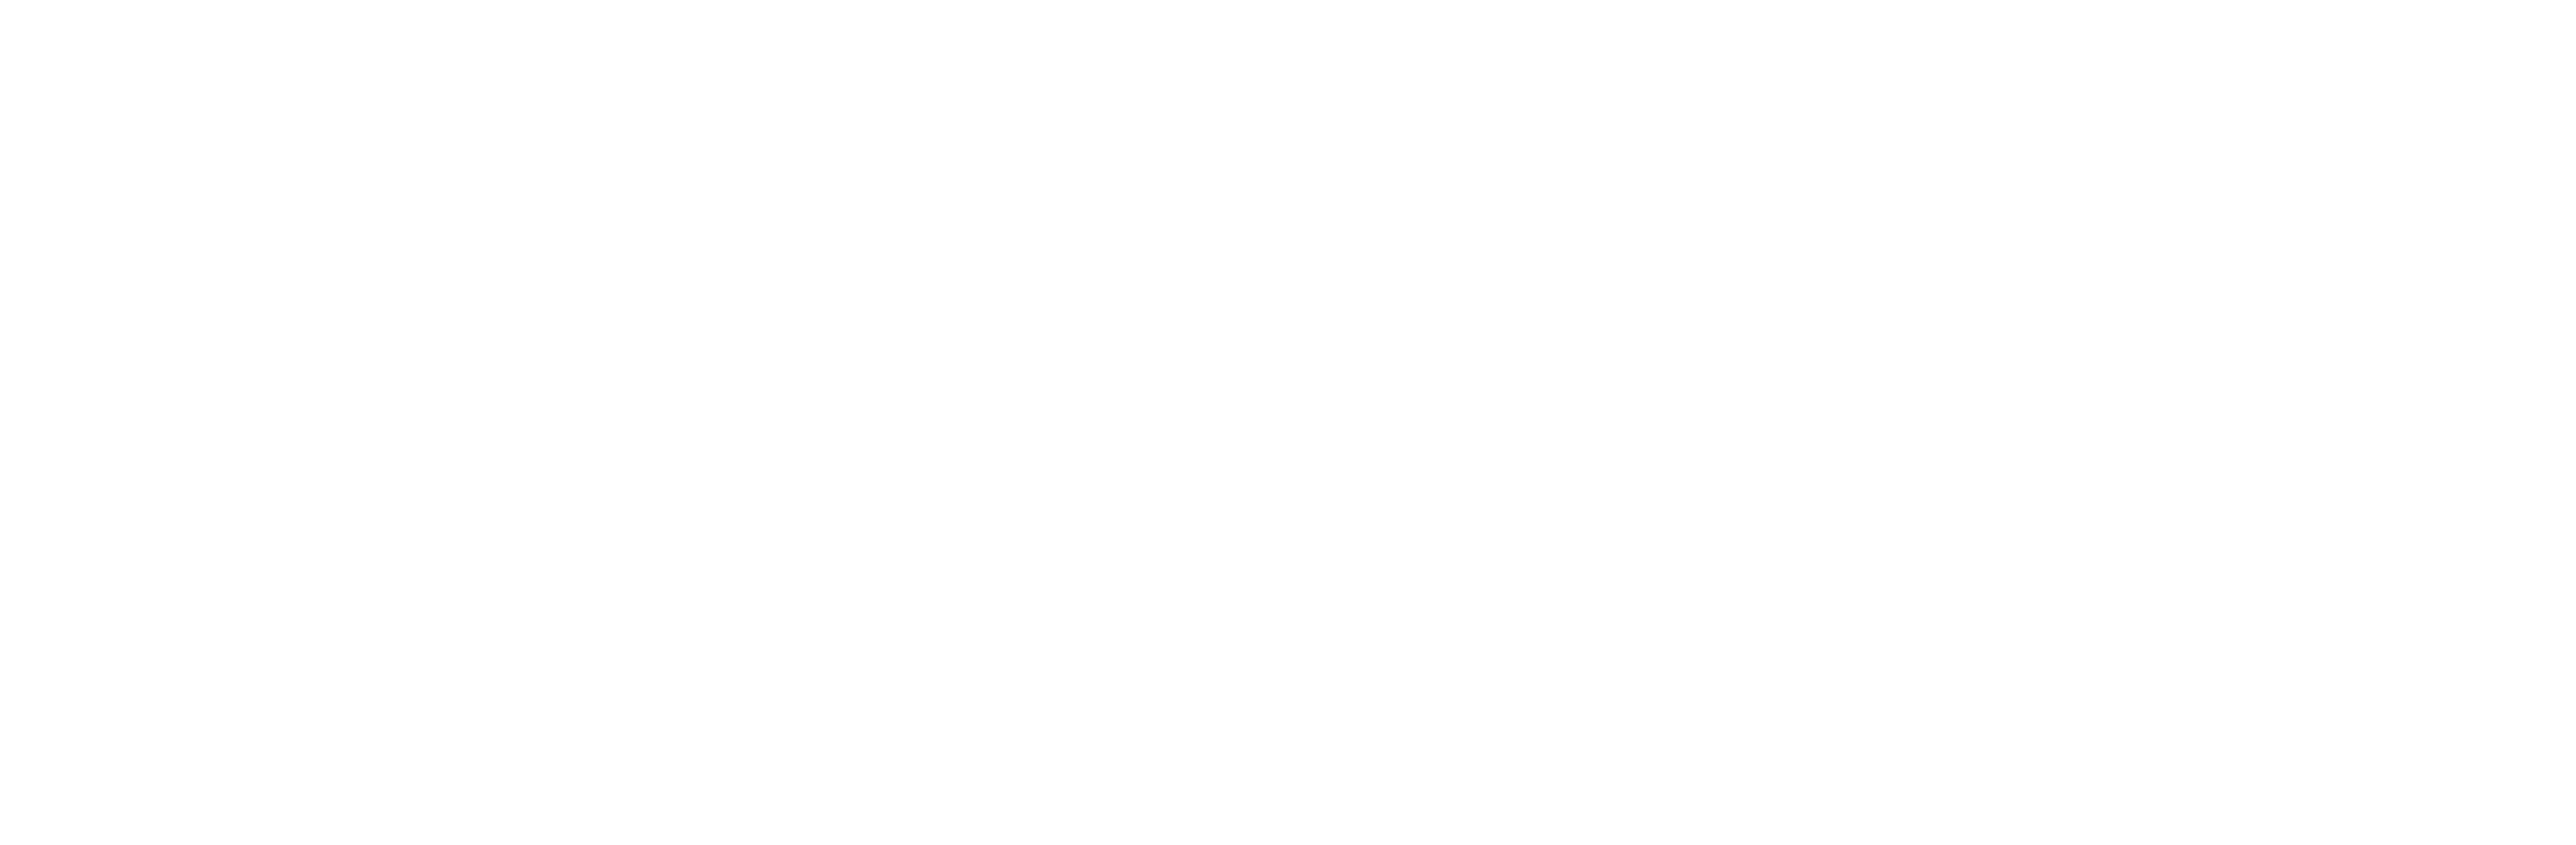 Logotipo del programa de fidelización Accor